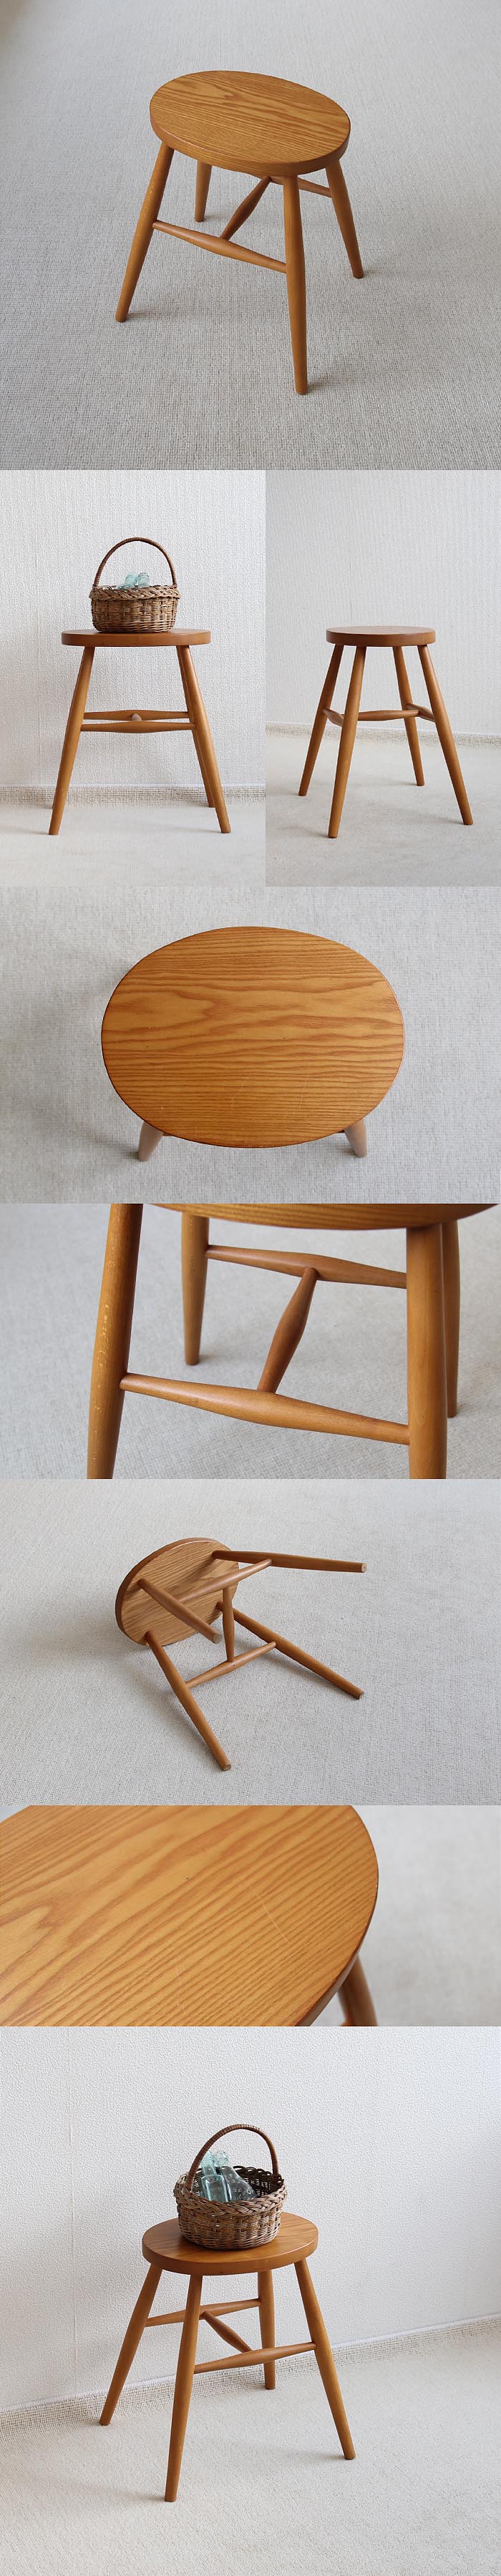 イギリス ヴィンテージ ウッドスツール 木製椅子 飾り台 カントリー 無垢材 家具 V-339